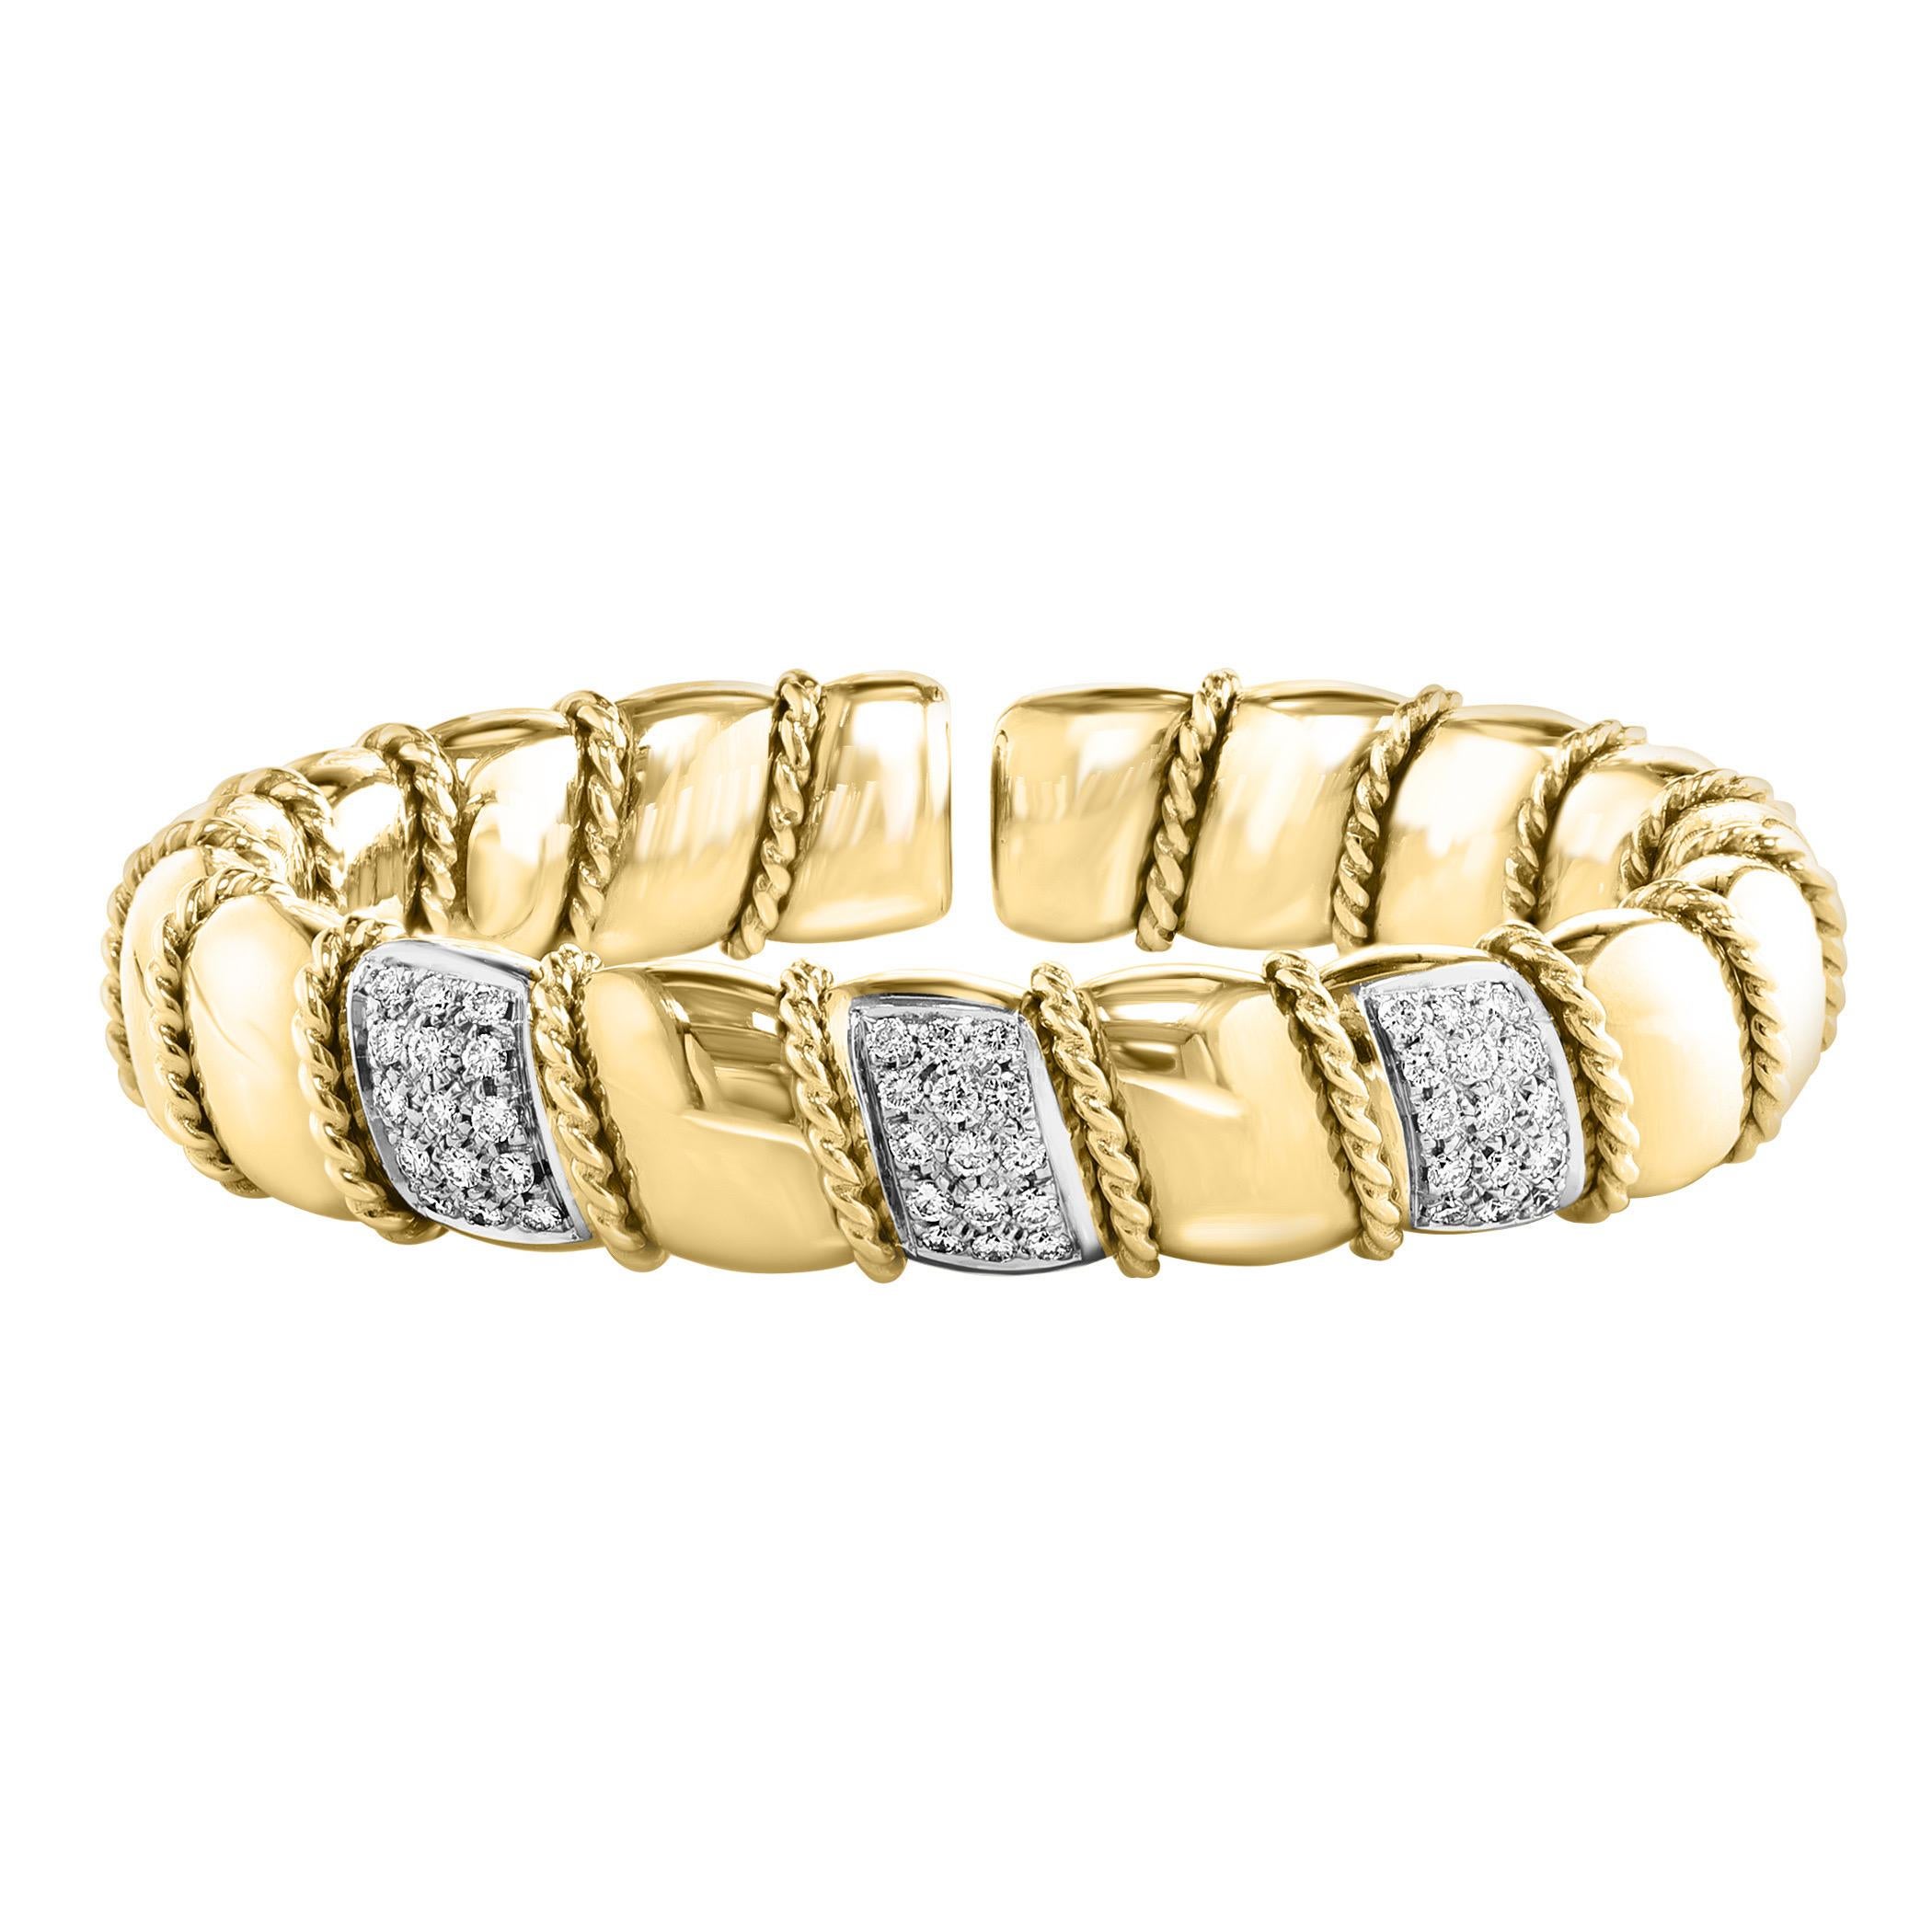 Cet exquis bracelet manchette vintage met en valeur deux carats de diamants éblouissants sertis dans un élégant or jaune massif de 18 carats. Le bracelet est conçu avec trois barres ornées de diamants ronds de taille brillante, créant un attrait